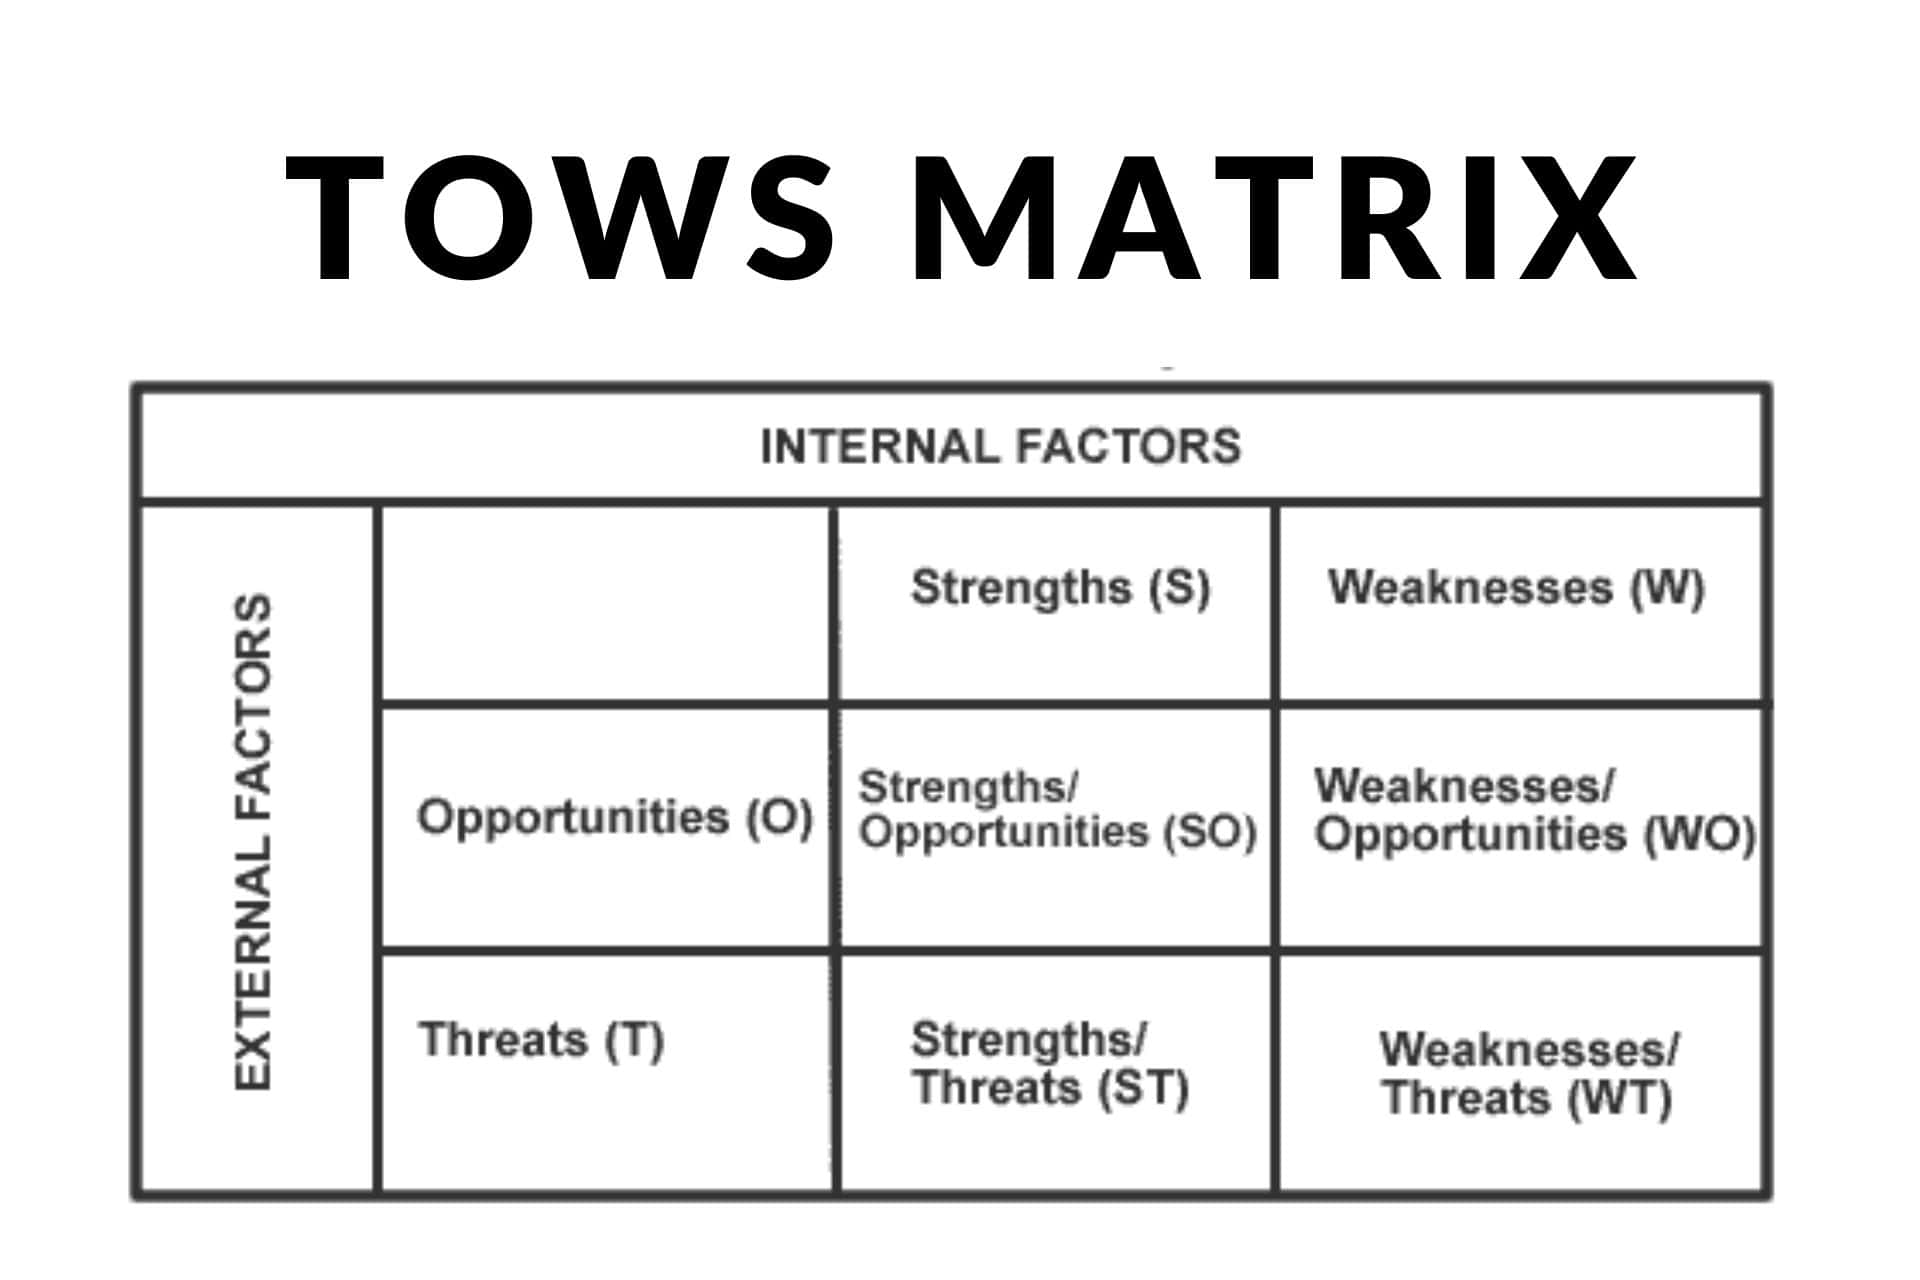 TOWS Matrix Analysis